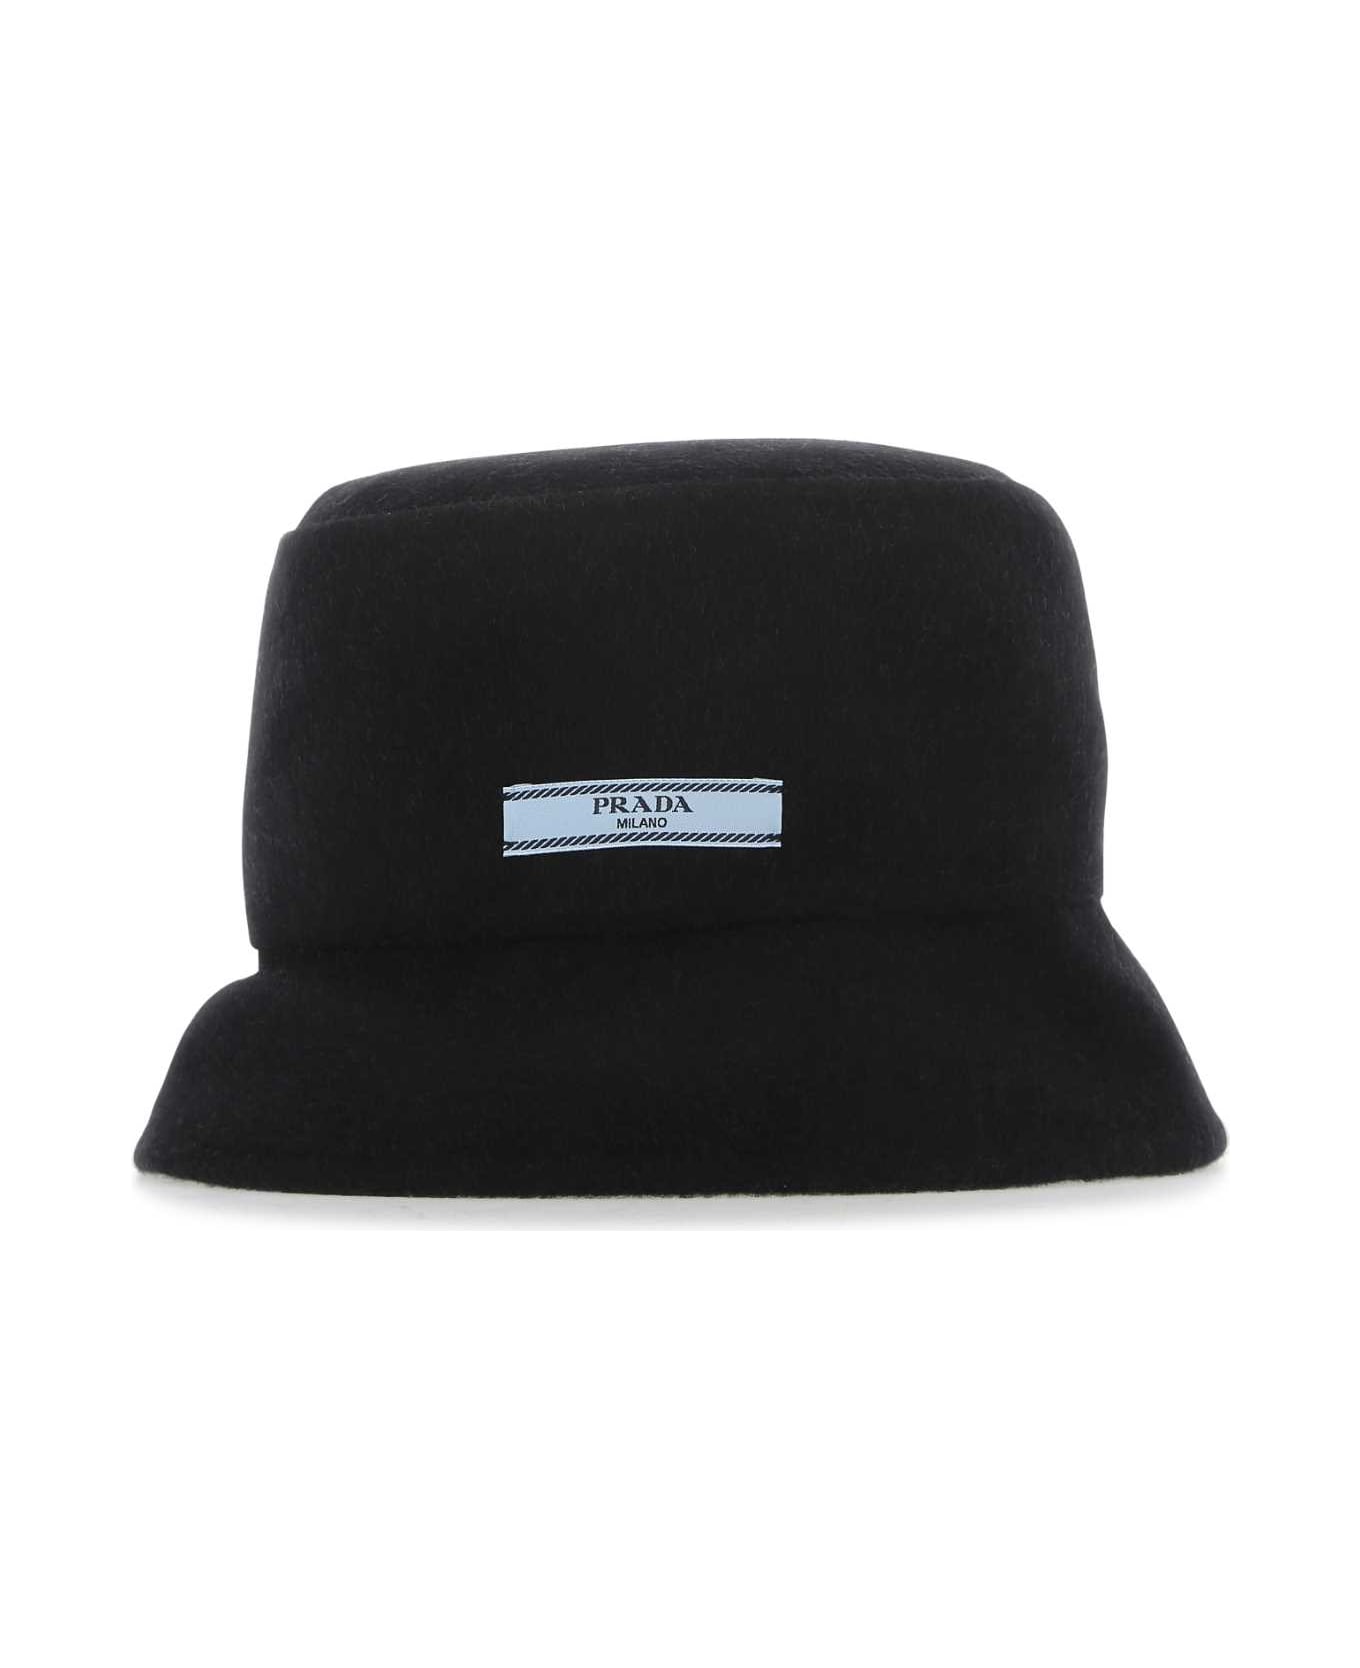 Prada Black Cashmere Hat - NEROGRIGIO ヘアアクセサリー